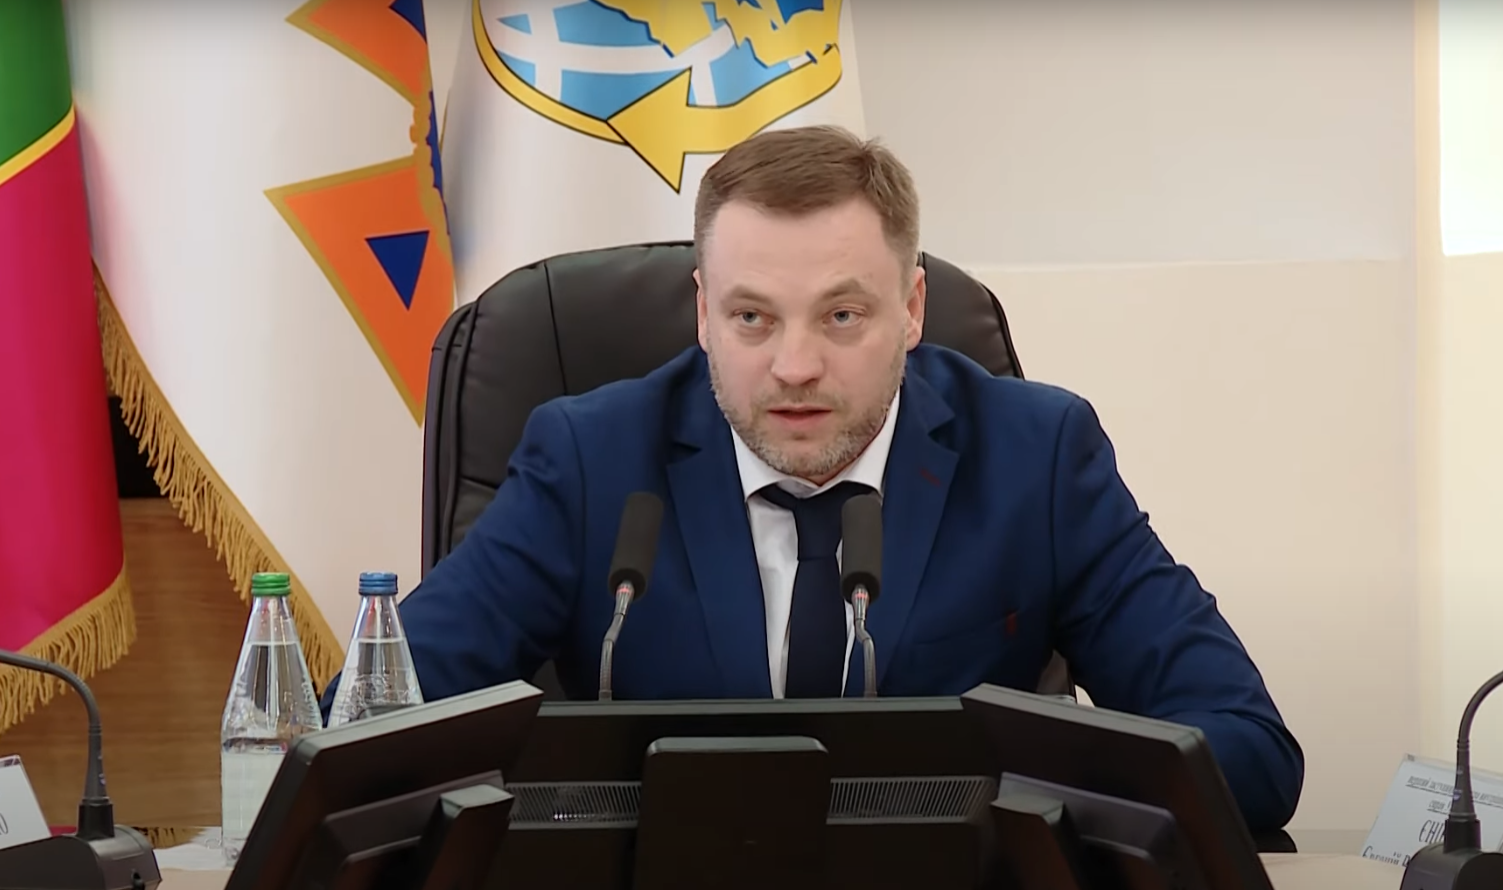 Подробности о новом органе рассказал глава МВД Денис Монастырский.